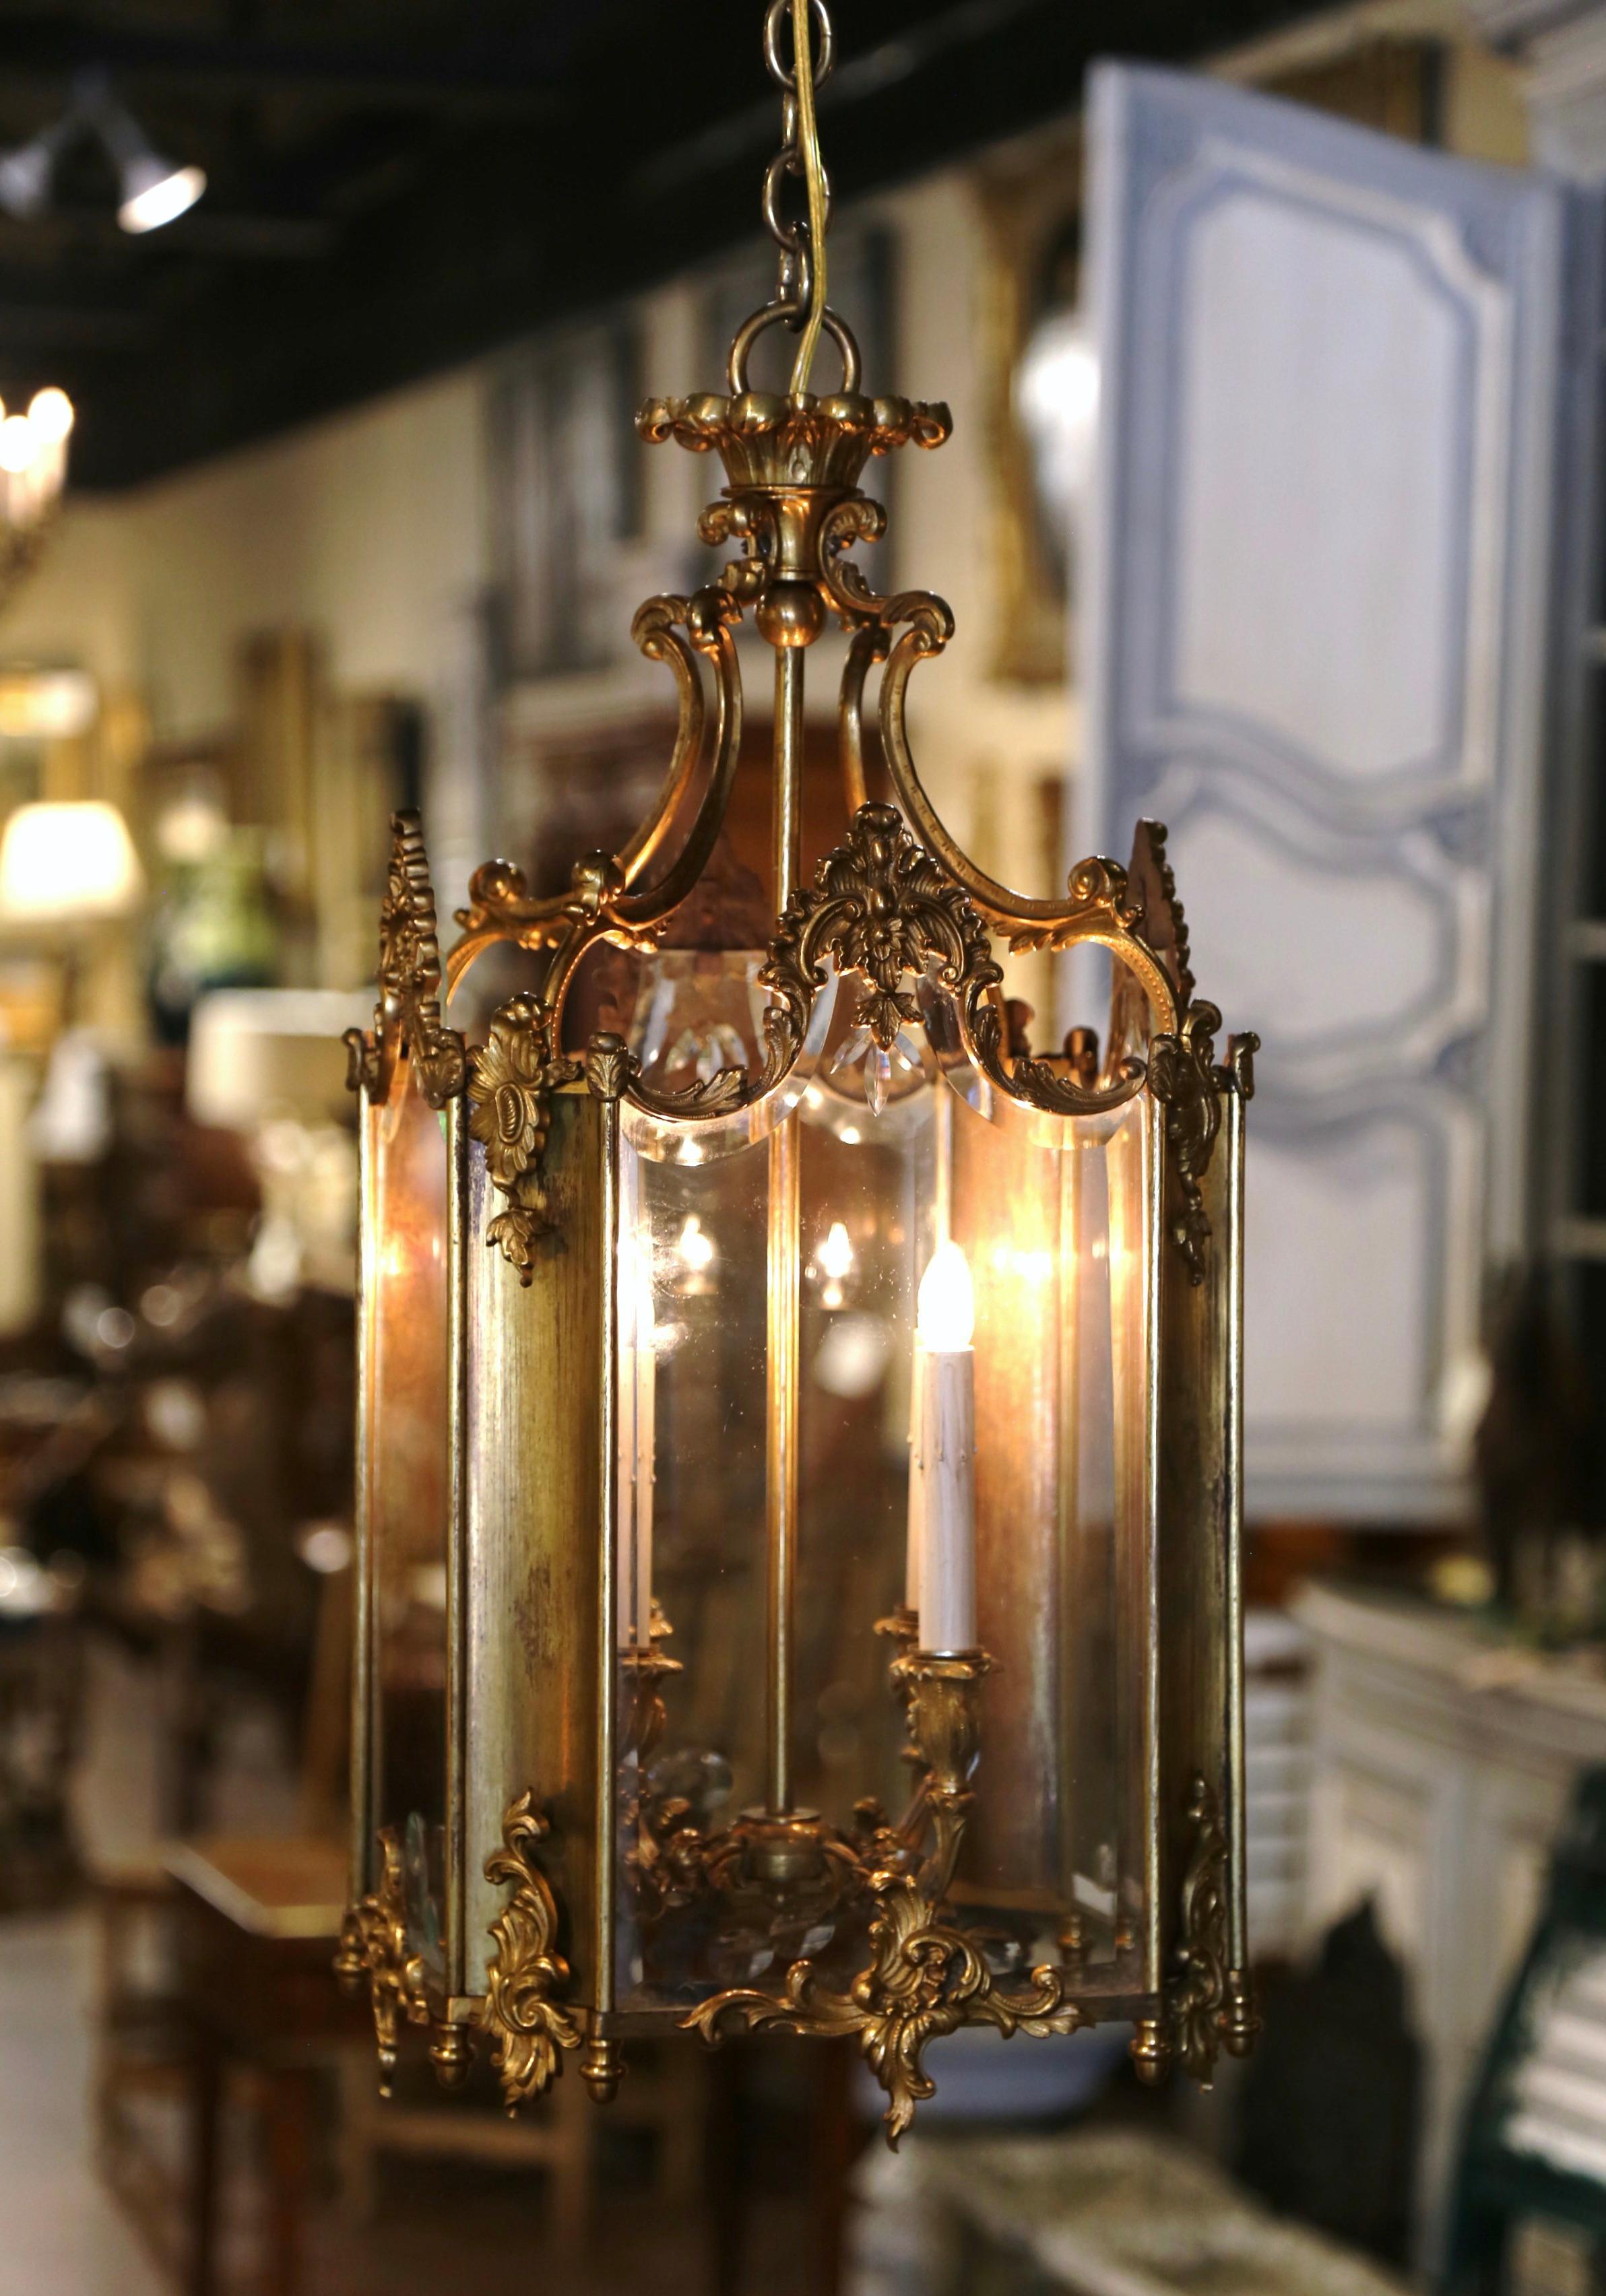 Faites sensation dans votre entrée ou votre salle d'eau avec cet élégant luminaire Napoléon III en bronze. Fabriquée en France, vers 1870, et de forme carrée, cette lanterne ancienne présente une couronne supérieure décorée de rinceaux et de